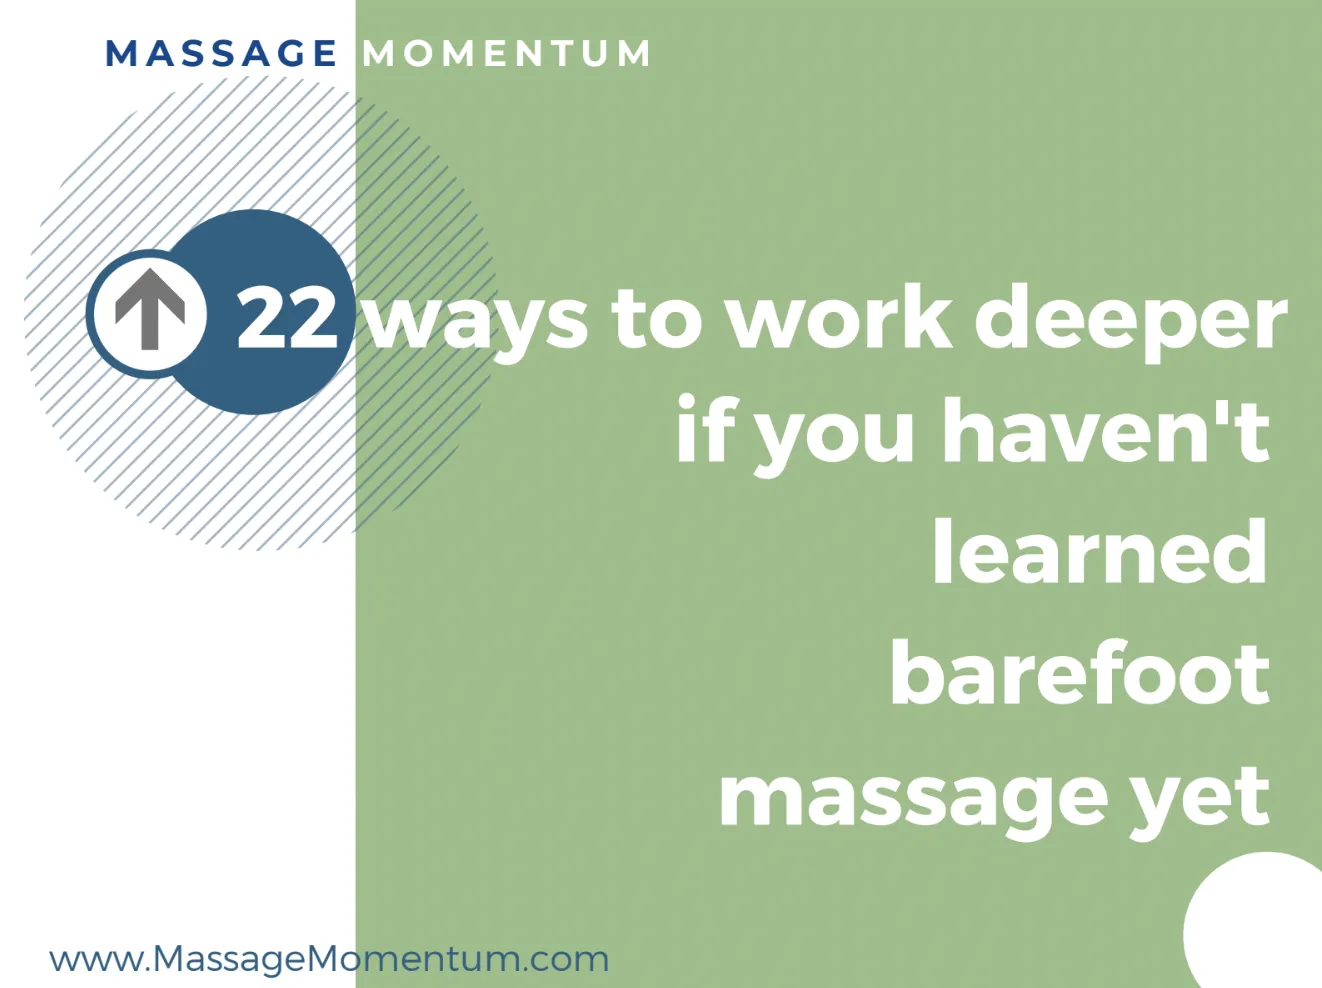 Massage momentum - work deeper